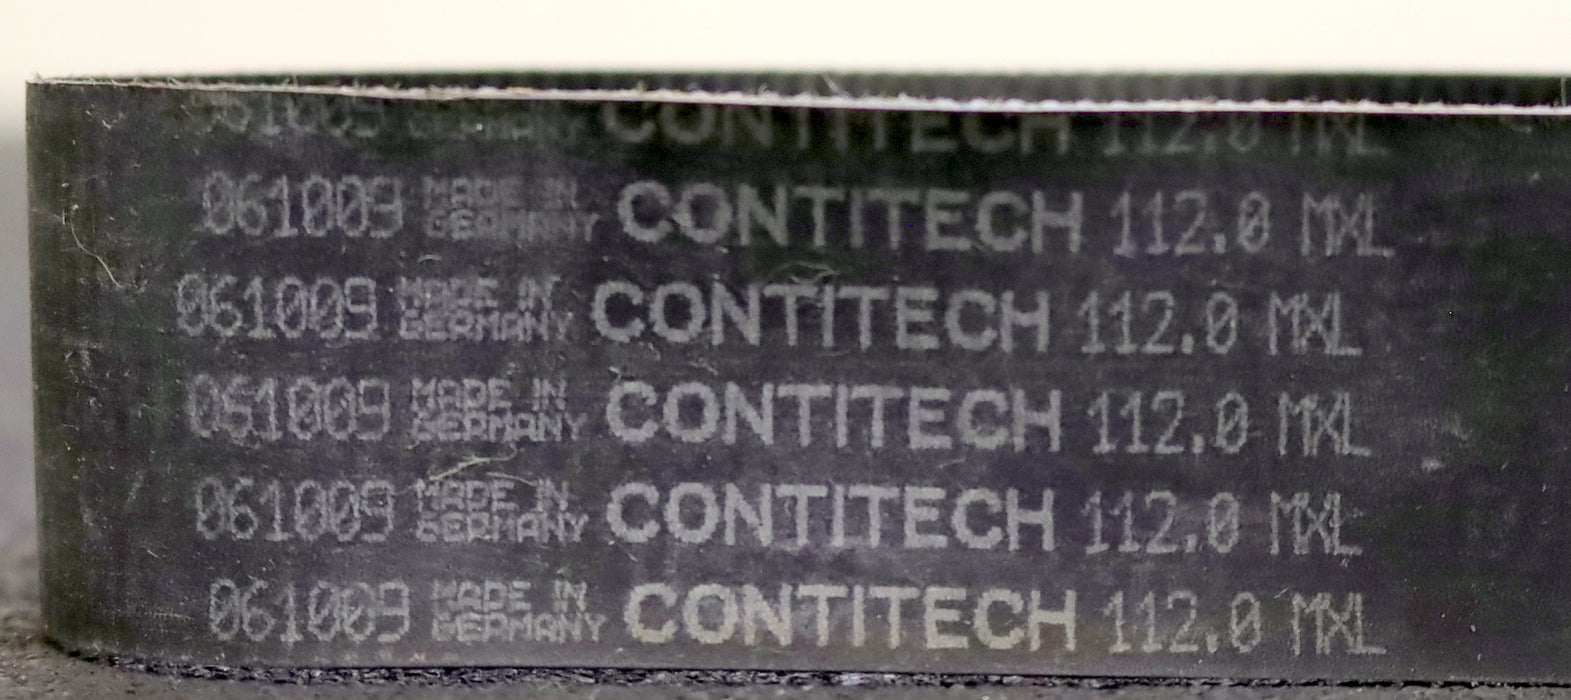 CONTITECH Zahnriemen Timing belt 112.0MXL Länge 284,48mm Breite 34mm - unbenutzt